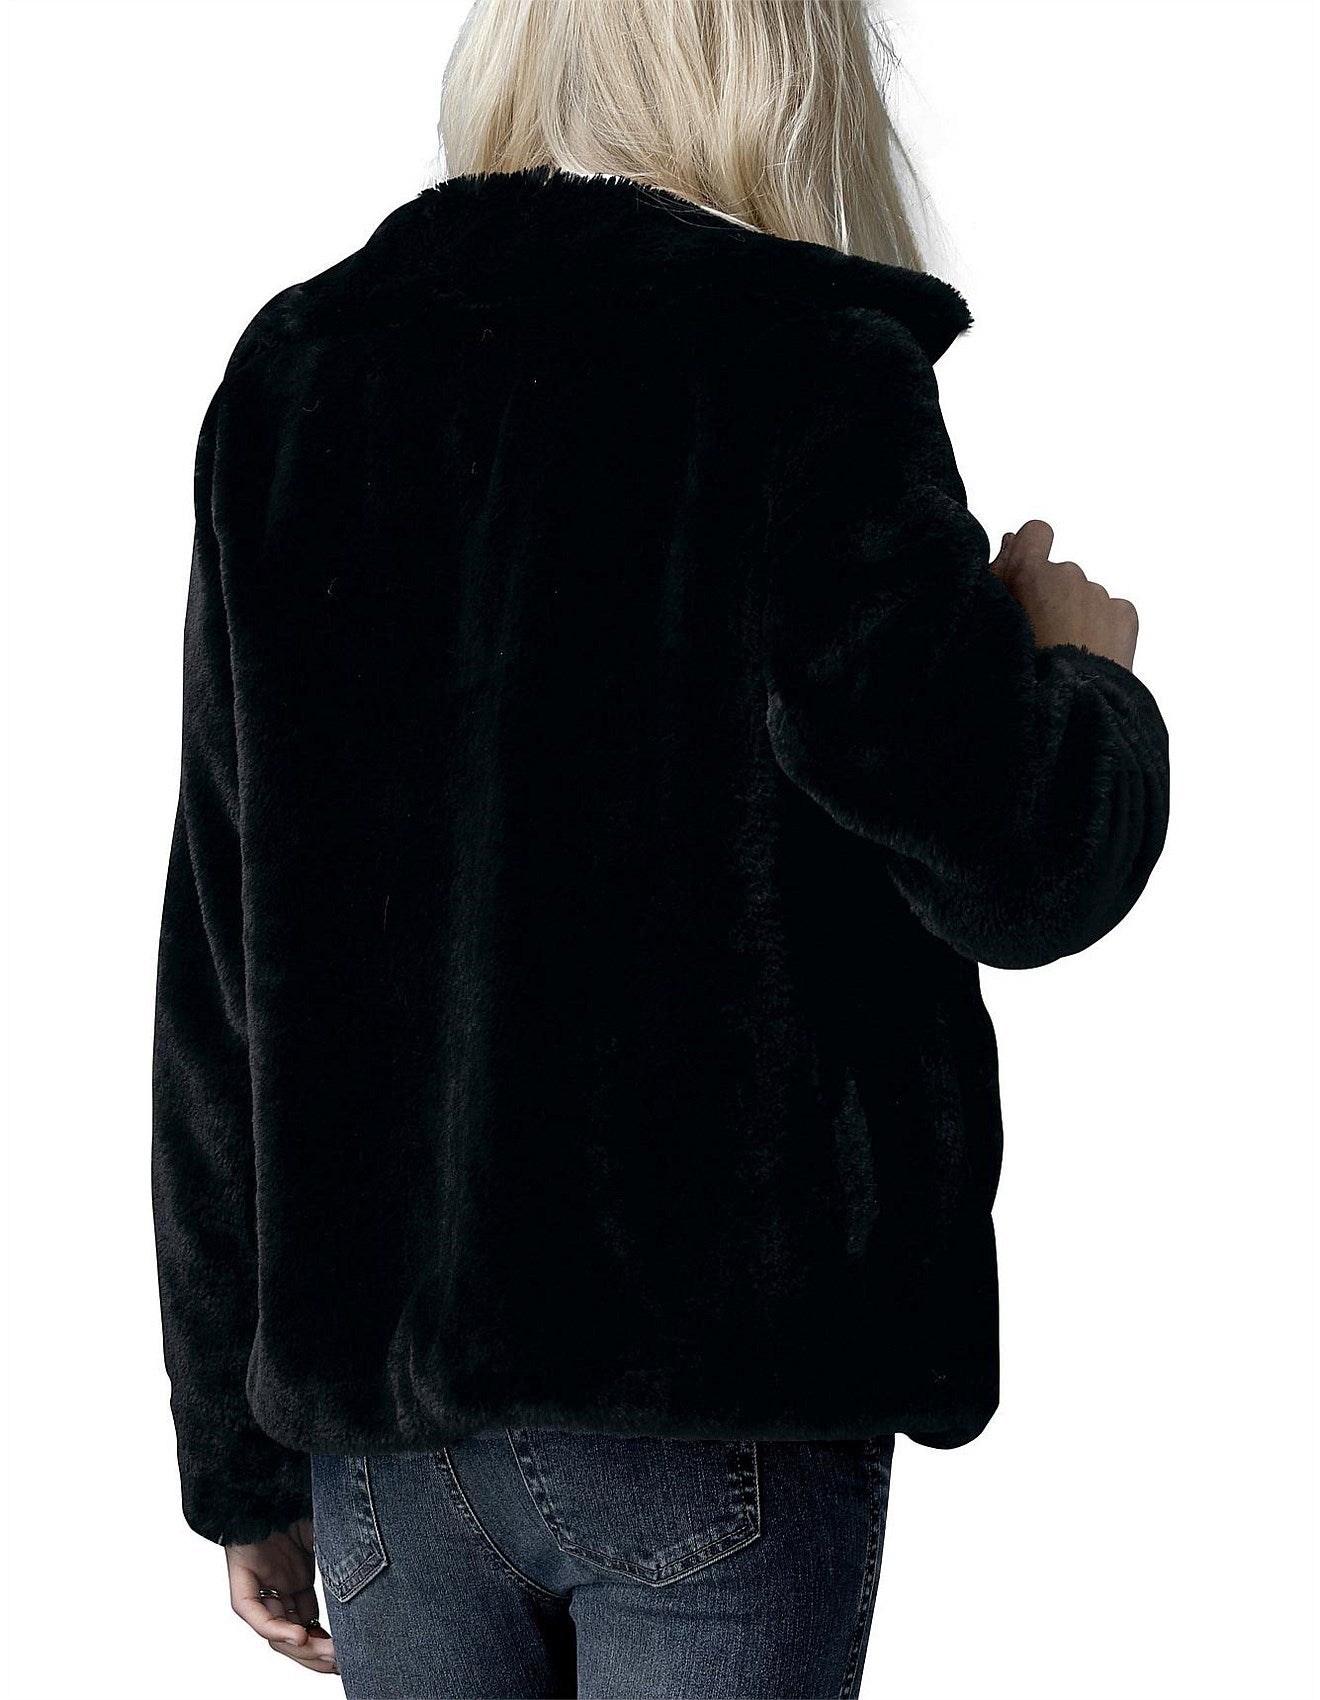 Lizzie Faux Fur Jacket